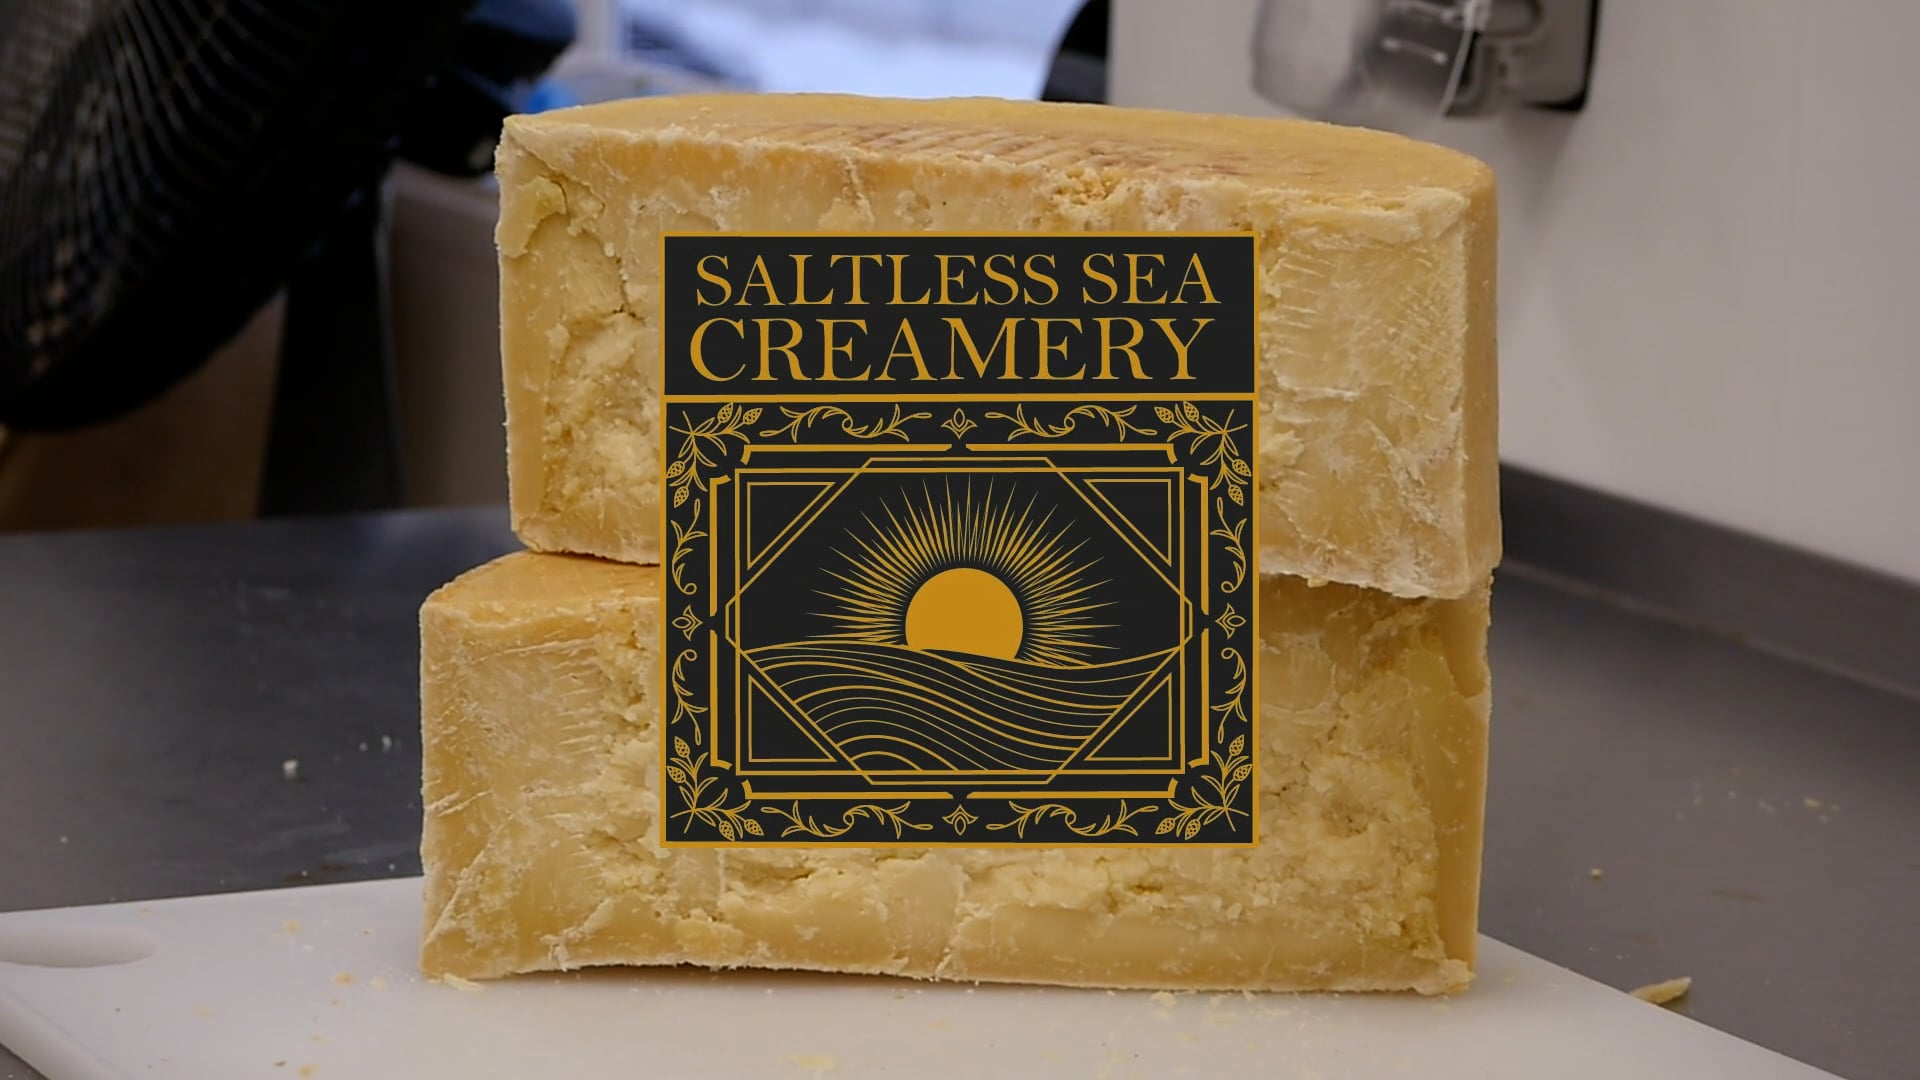 Saltless Sea Creamery